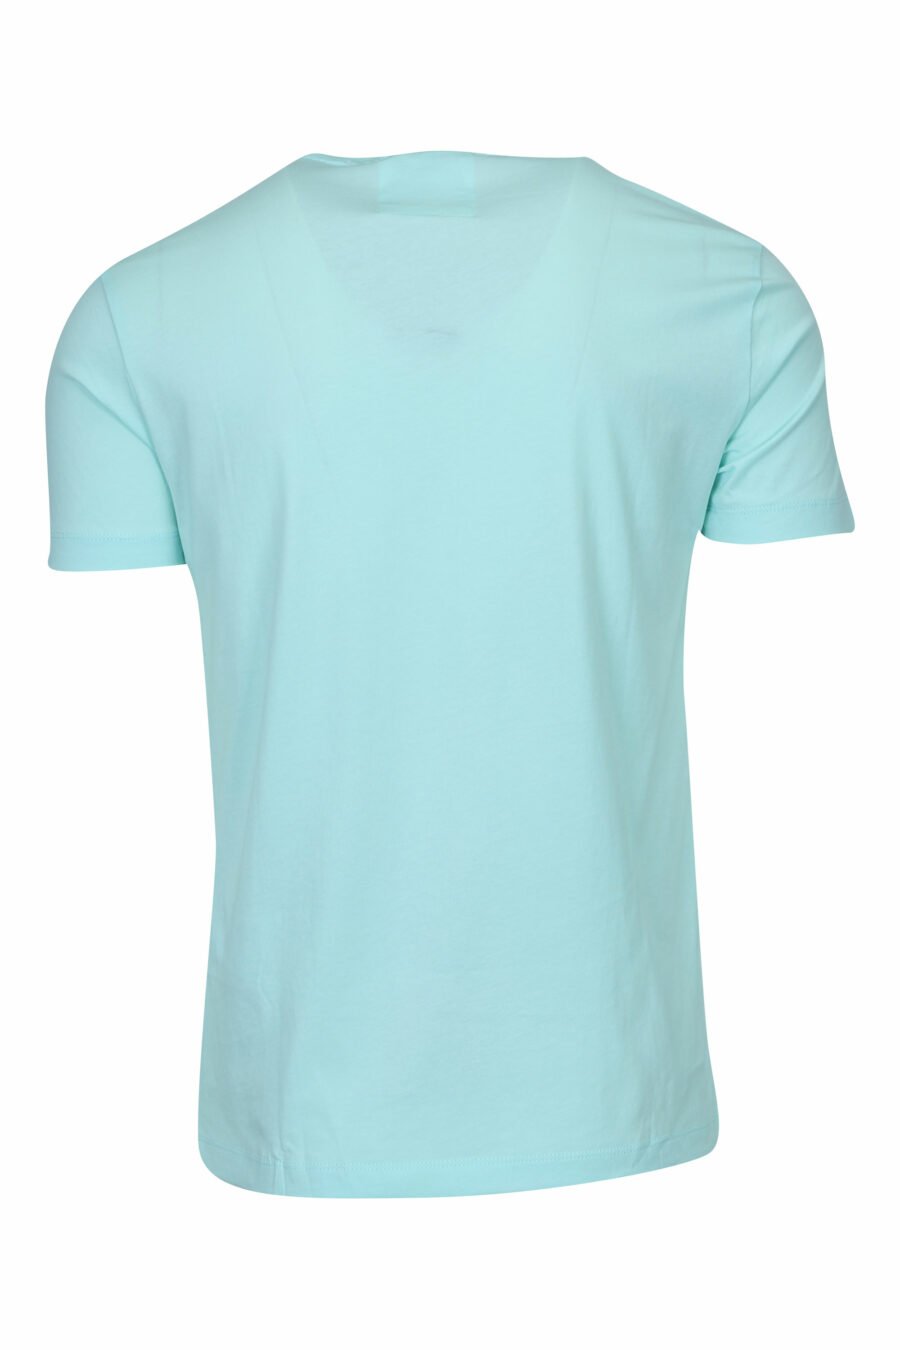 Sky blue T-shirt with "emporio" maxilogo - 8058997257701 1